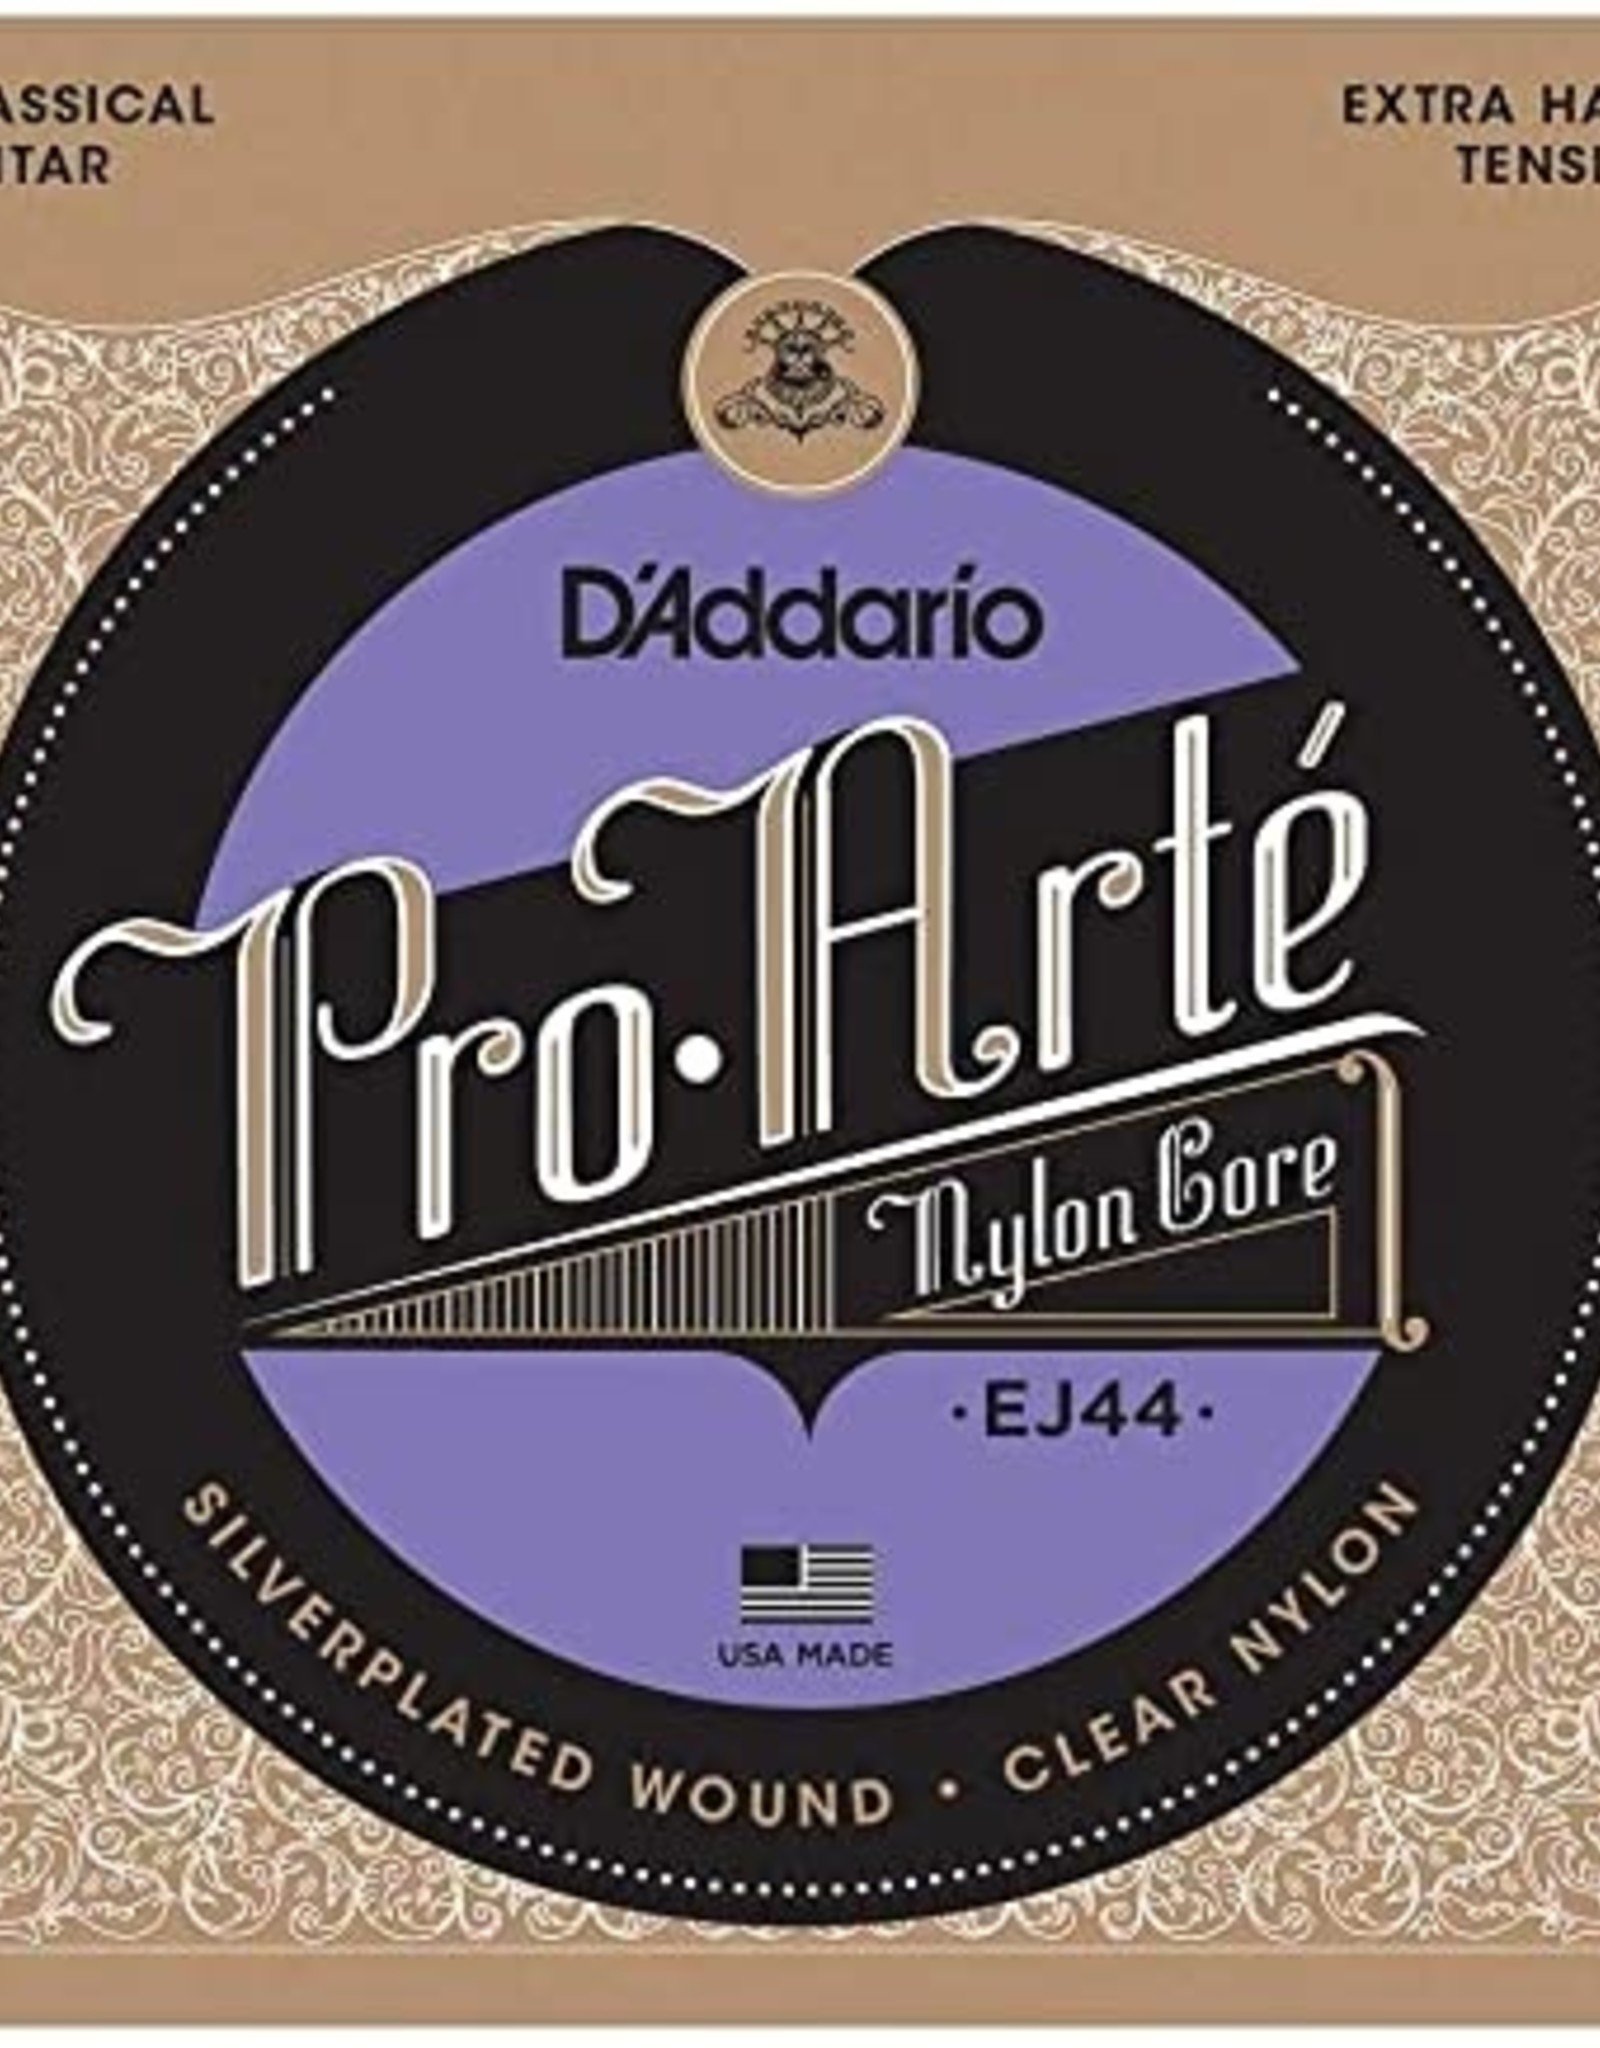 D'Addario D'Addario Pro Arte EJ44 Extra Hard Tension Nylon Classical Guitar Strings